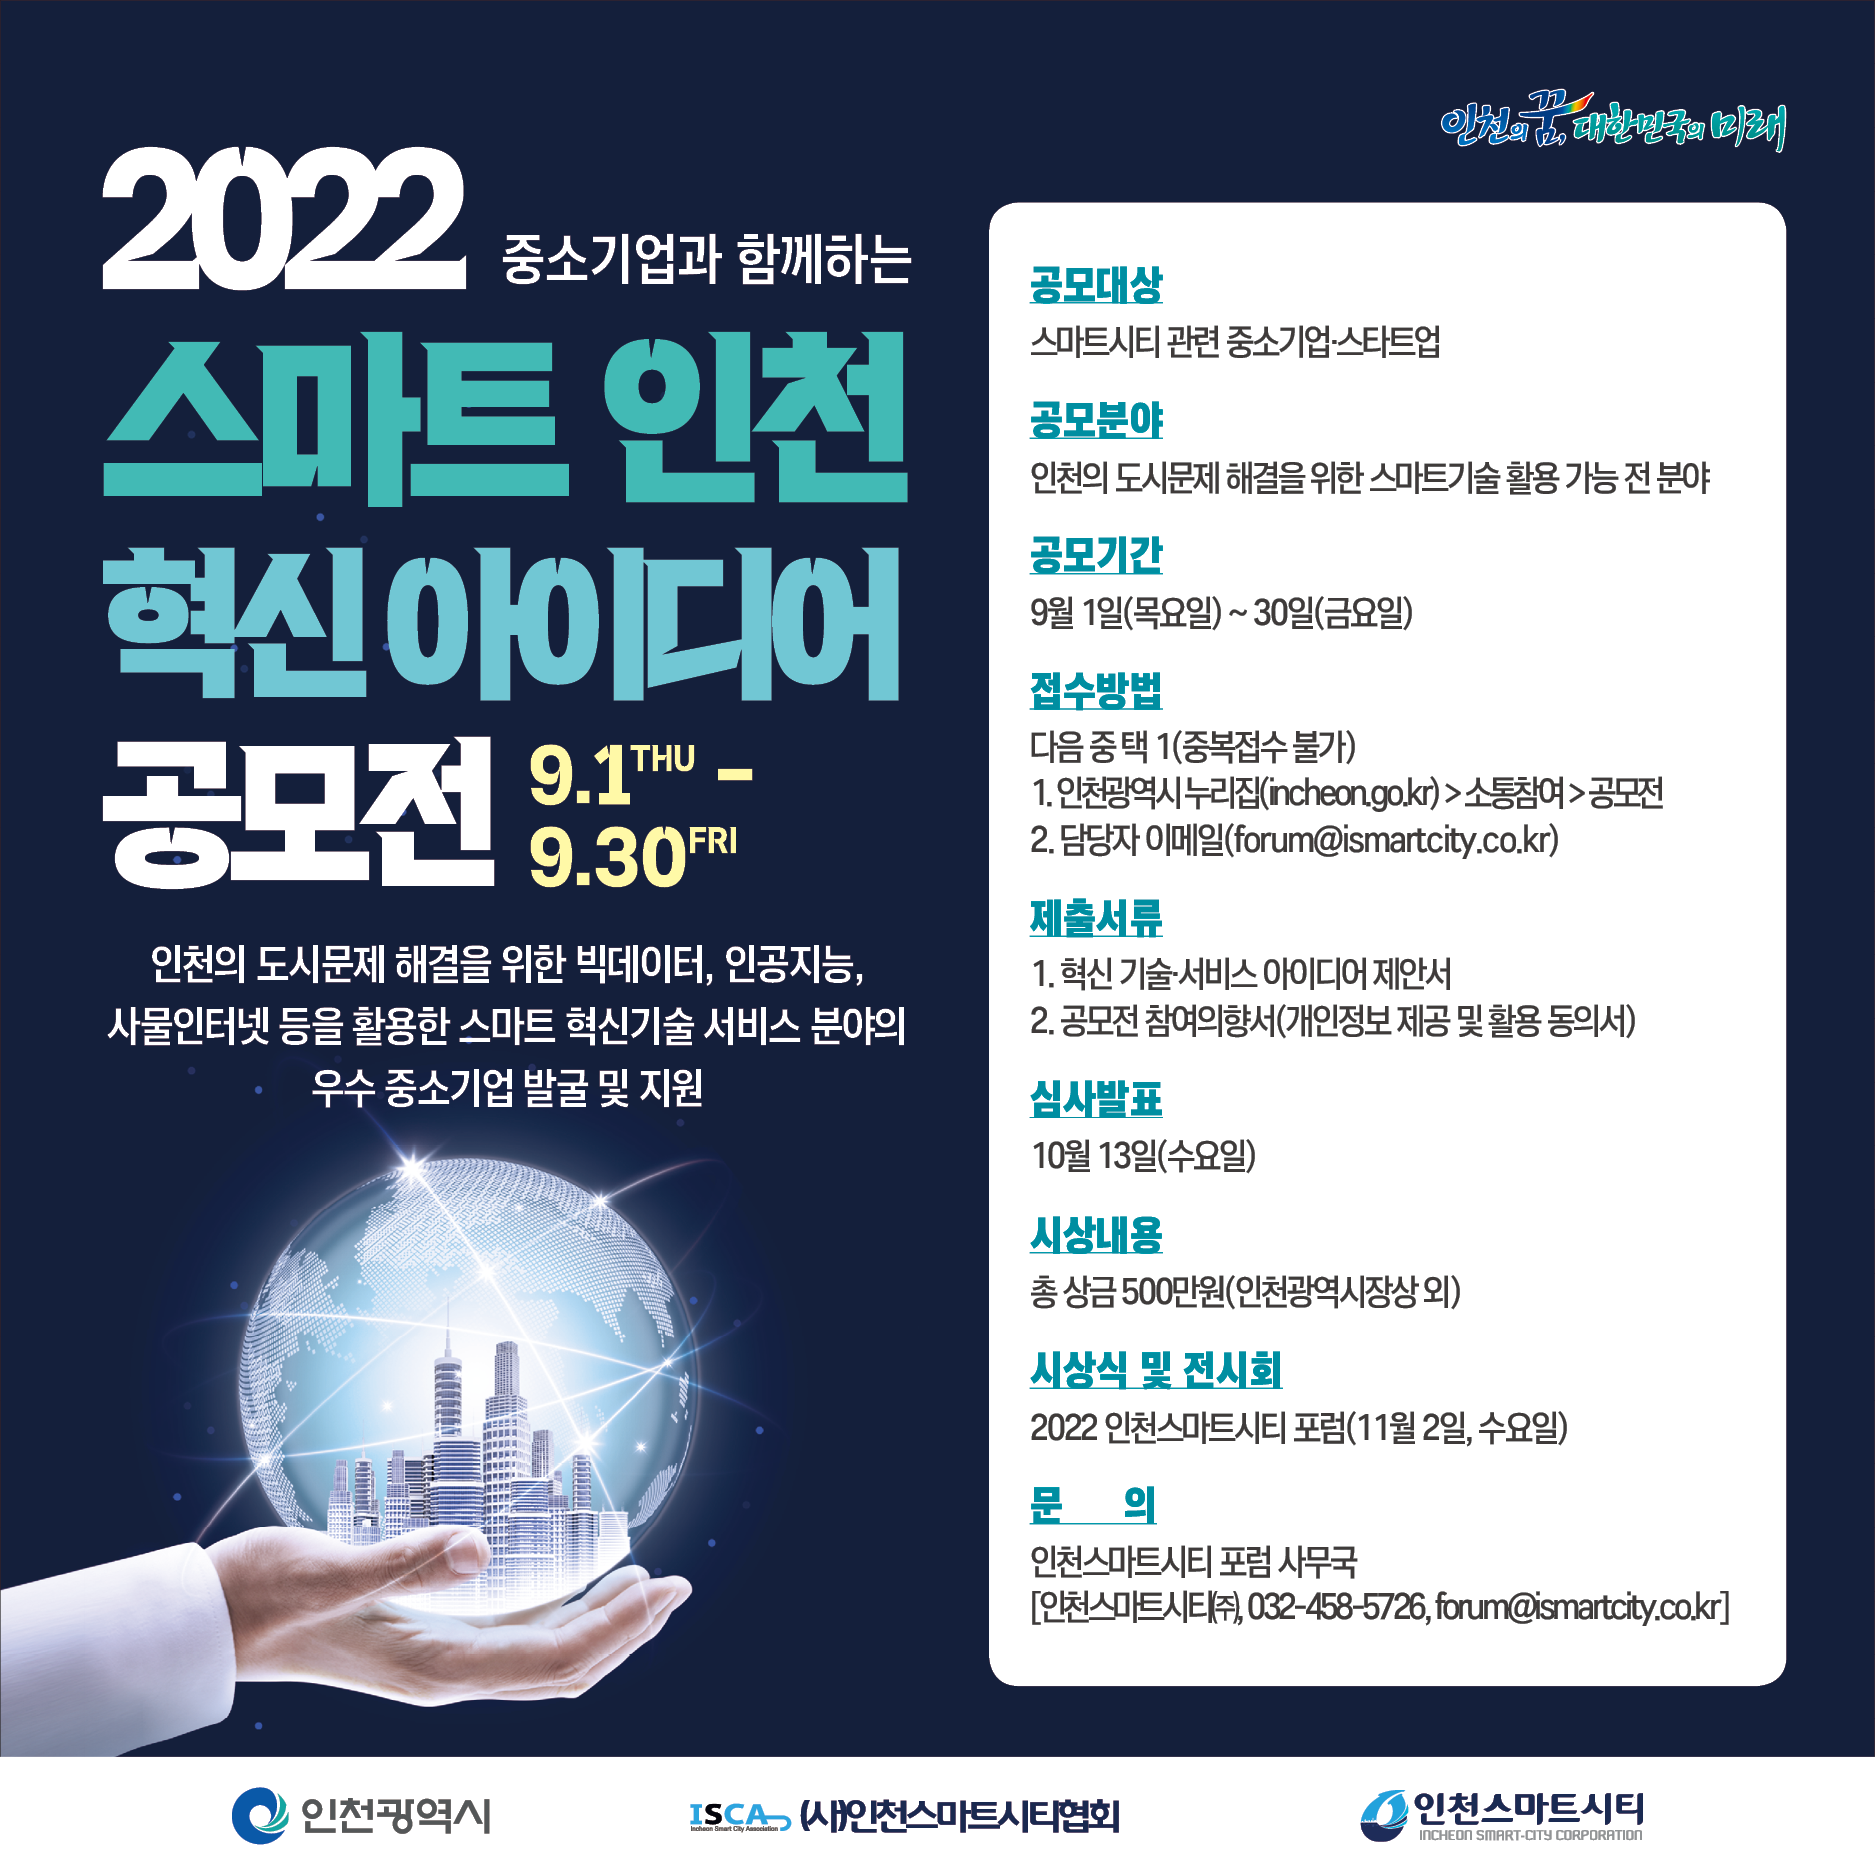 2022 스마트 인천 혁신 아이디어 공모전